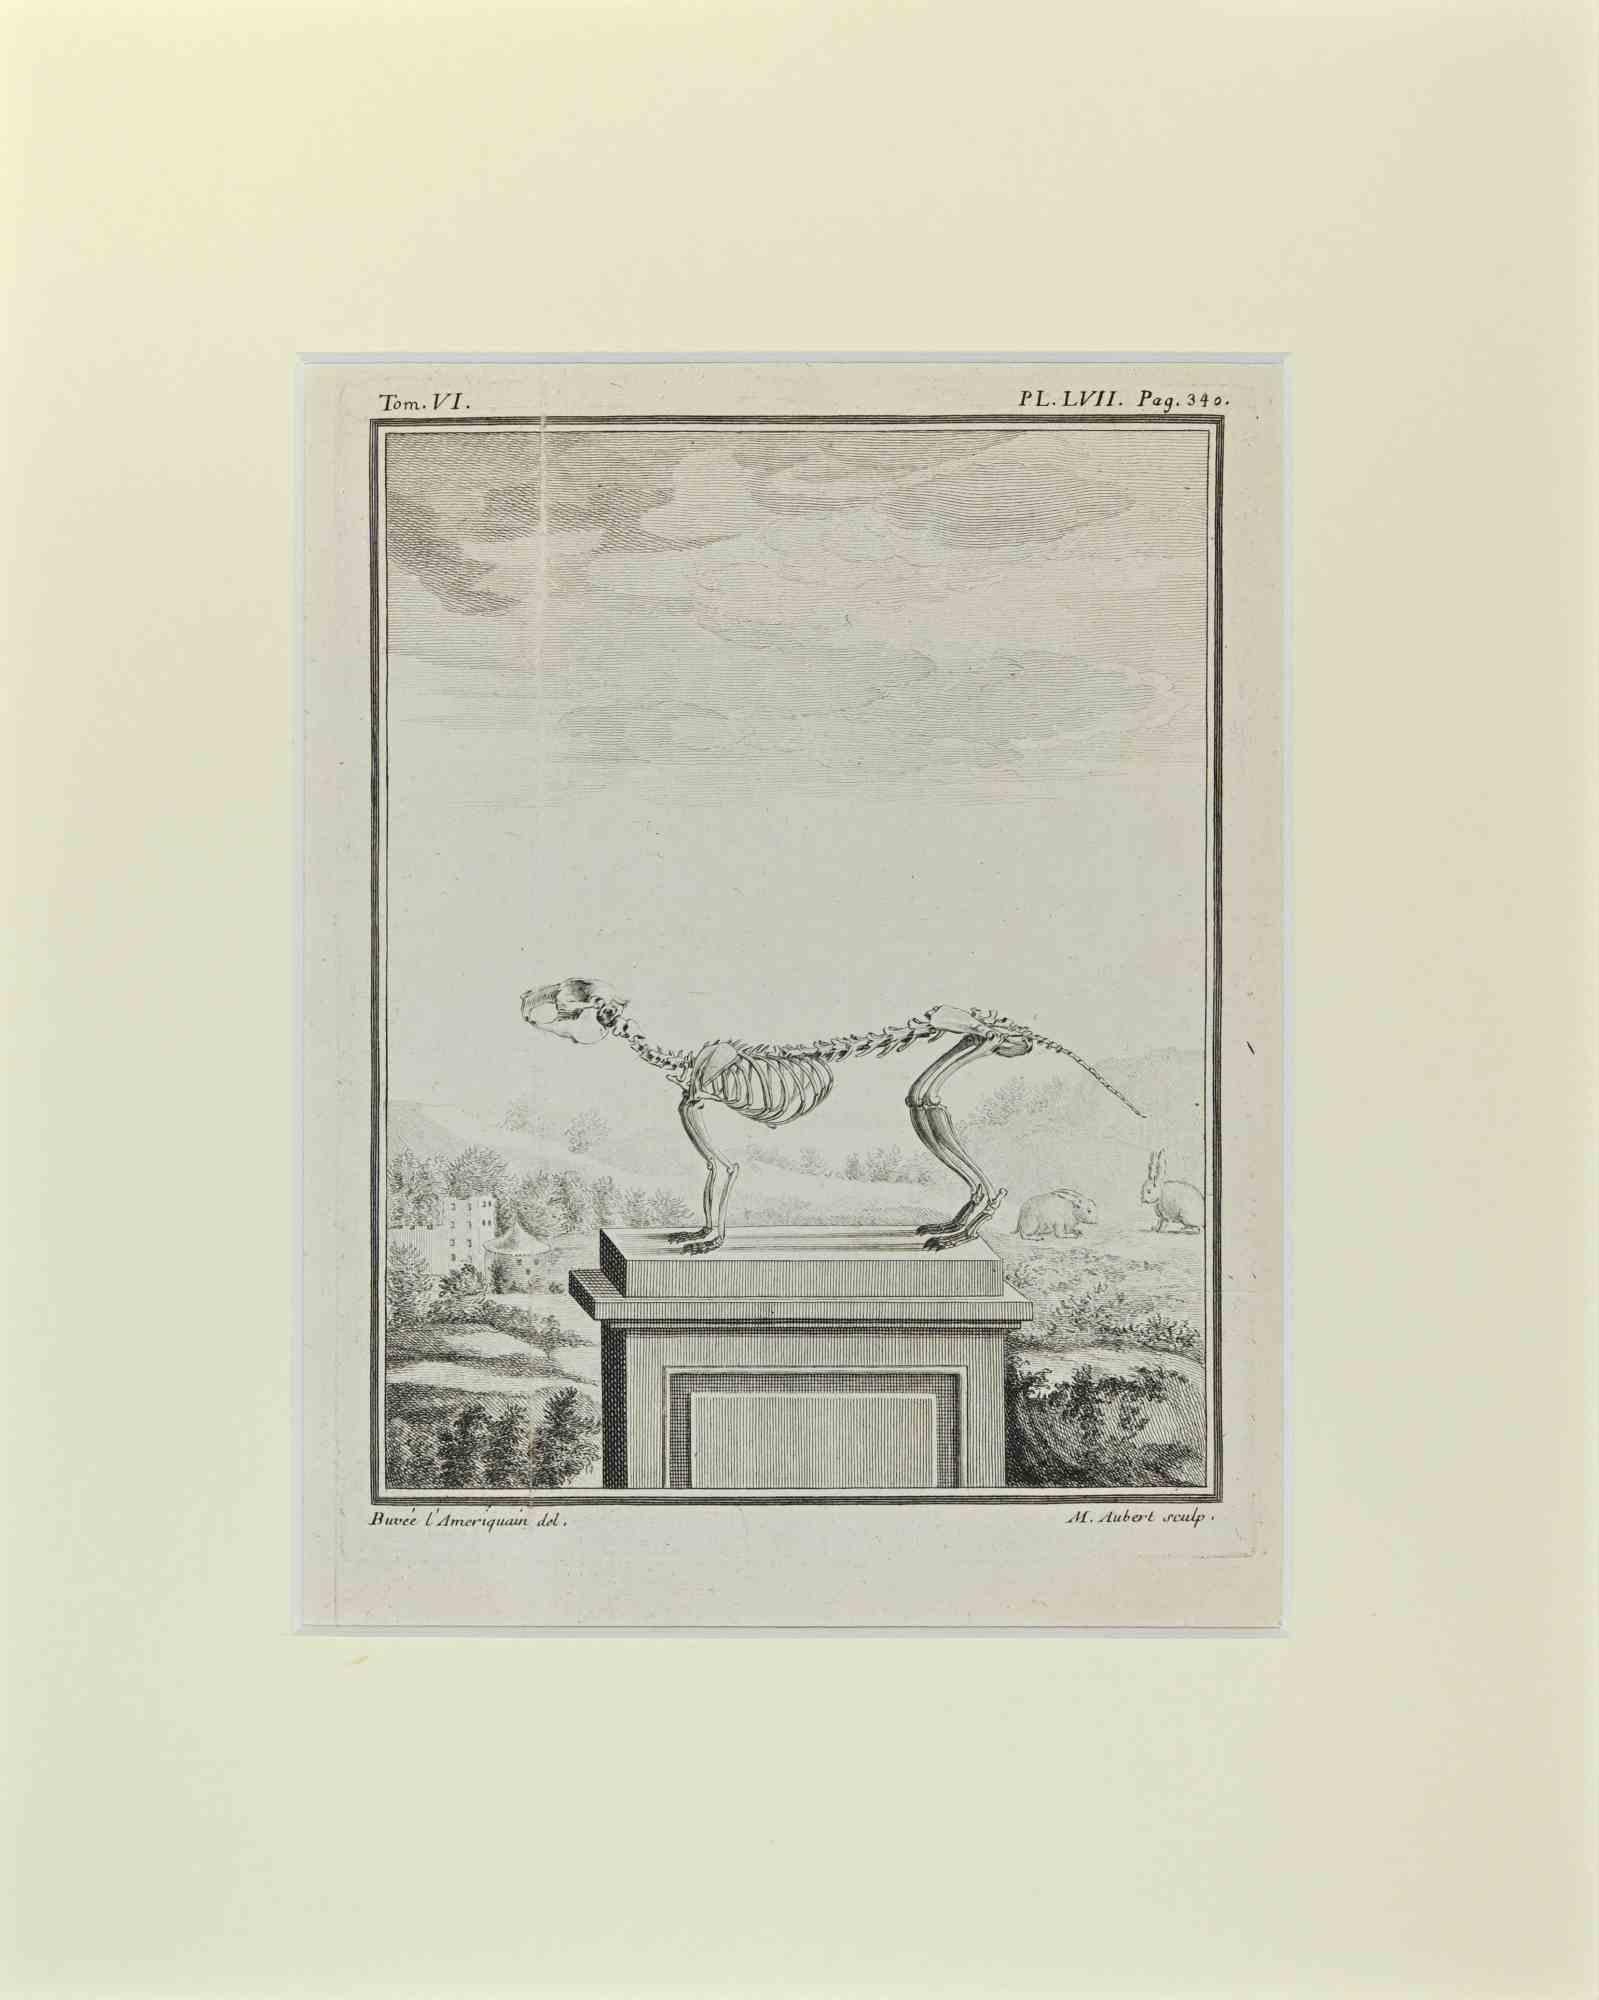 Squelette Quadrupède est une œuvre d'art réalisée par Buvée l'Américain en 1771.  

Gravure à l'eau-forte B./W. sur papier ivoire. Signé sur la plaque dans la marge inférieure gauche.

L'œuvre est collée sur du carton. Dimensions totales : 35x28